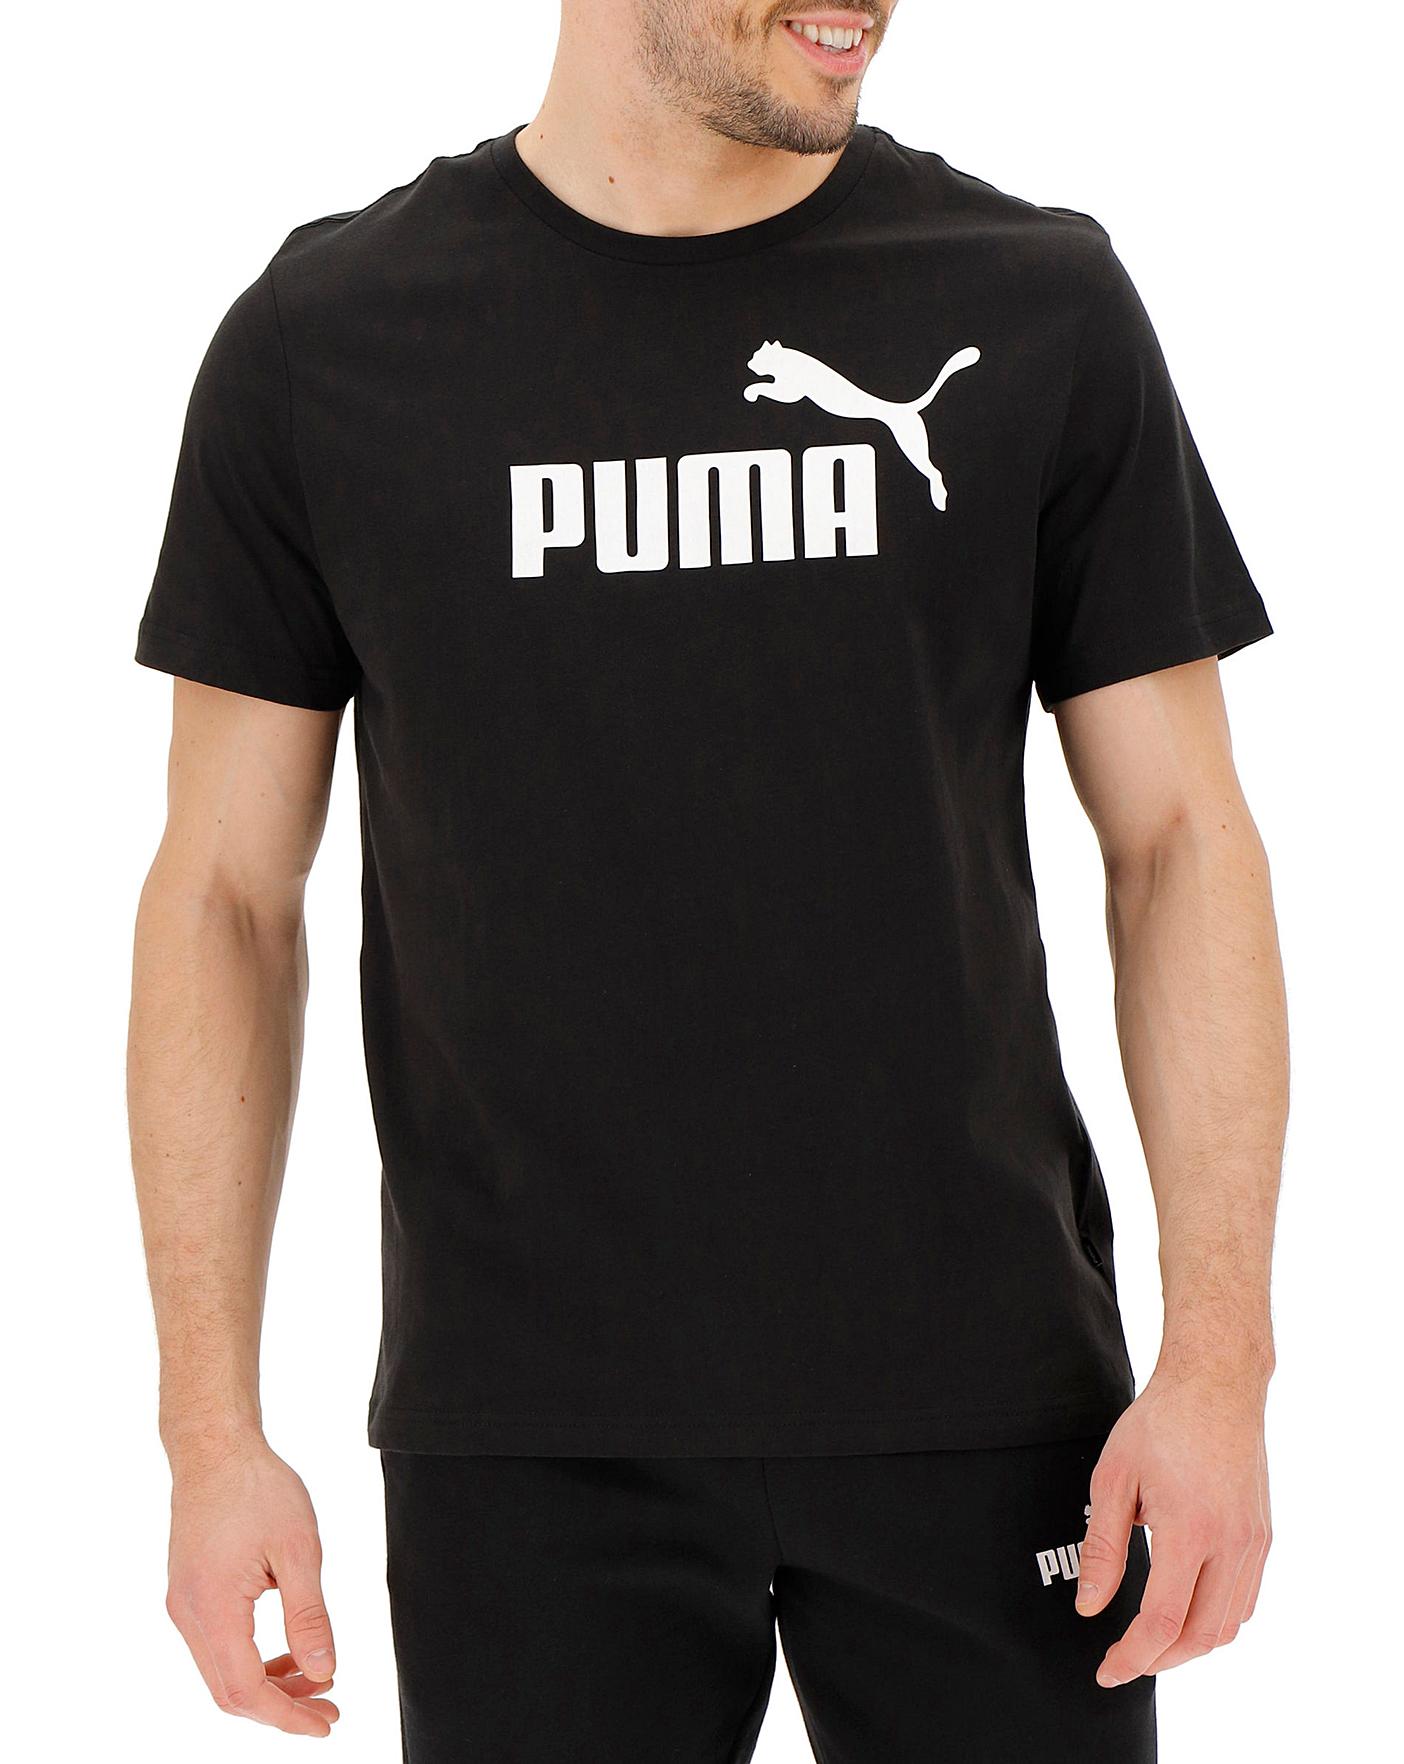 images of puma t shirts